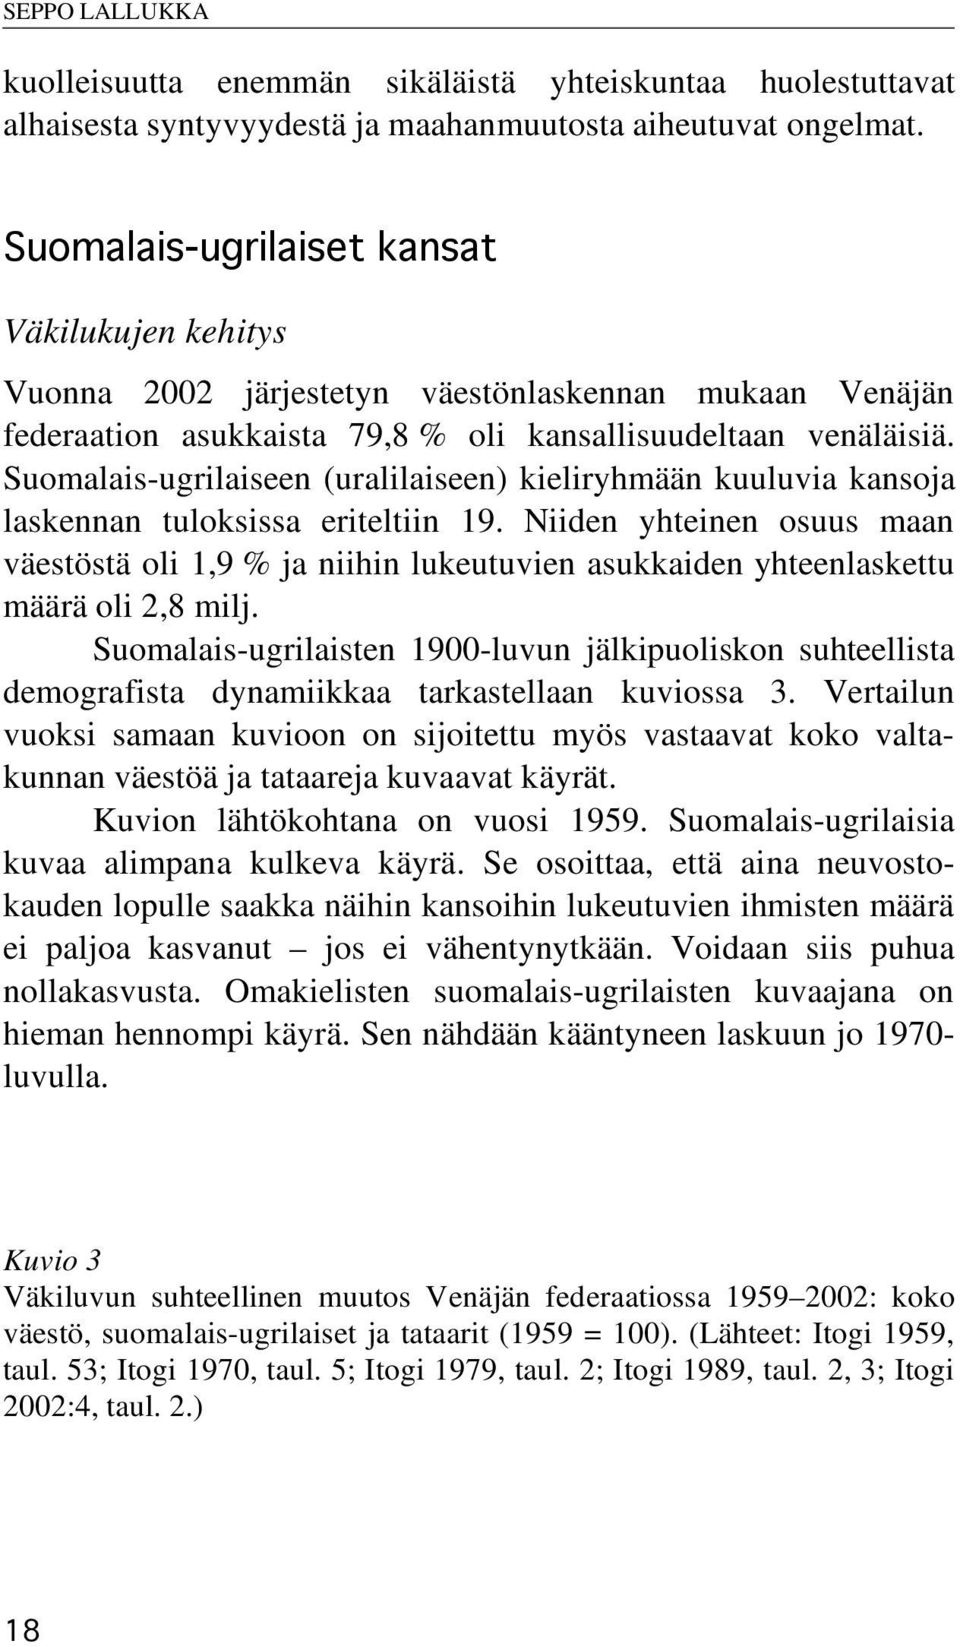 Suomalais-ugrilaiseen (uralilaiseen) kieliryhmään kuuluvia kansoja laskennan tuloksissa eriteltiin 19.